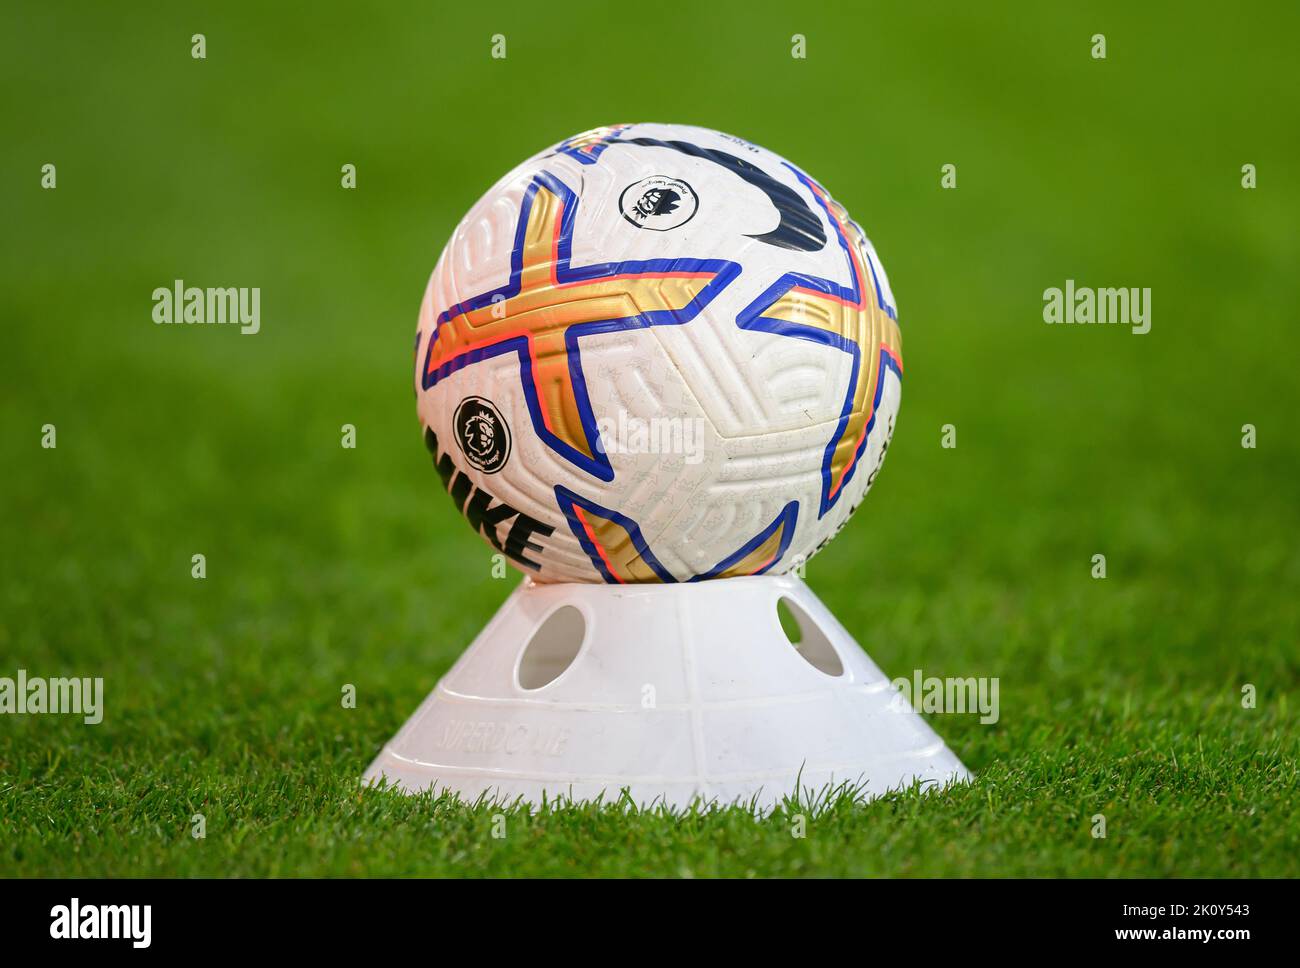 61,674 Premier League Ball Images, Stock Photos, 3D objects, & Vectors